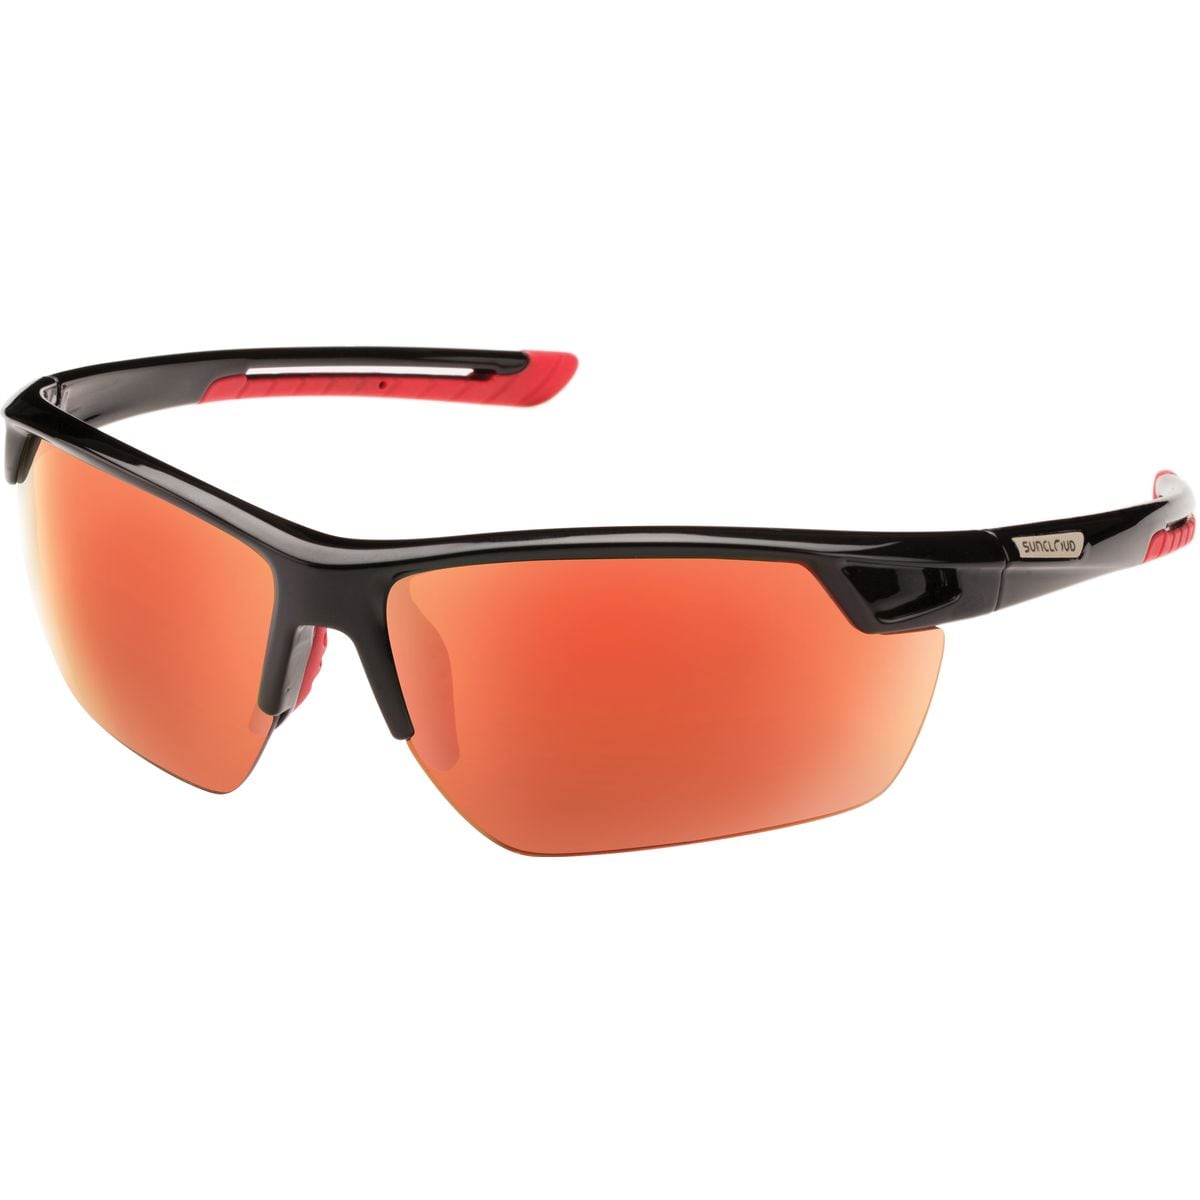 Поляризованные солнцезащитные очки contender Suncloud Polarized Optics, цвет black/red mirror очки солнцезащитные stylemark polarized l1475c